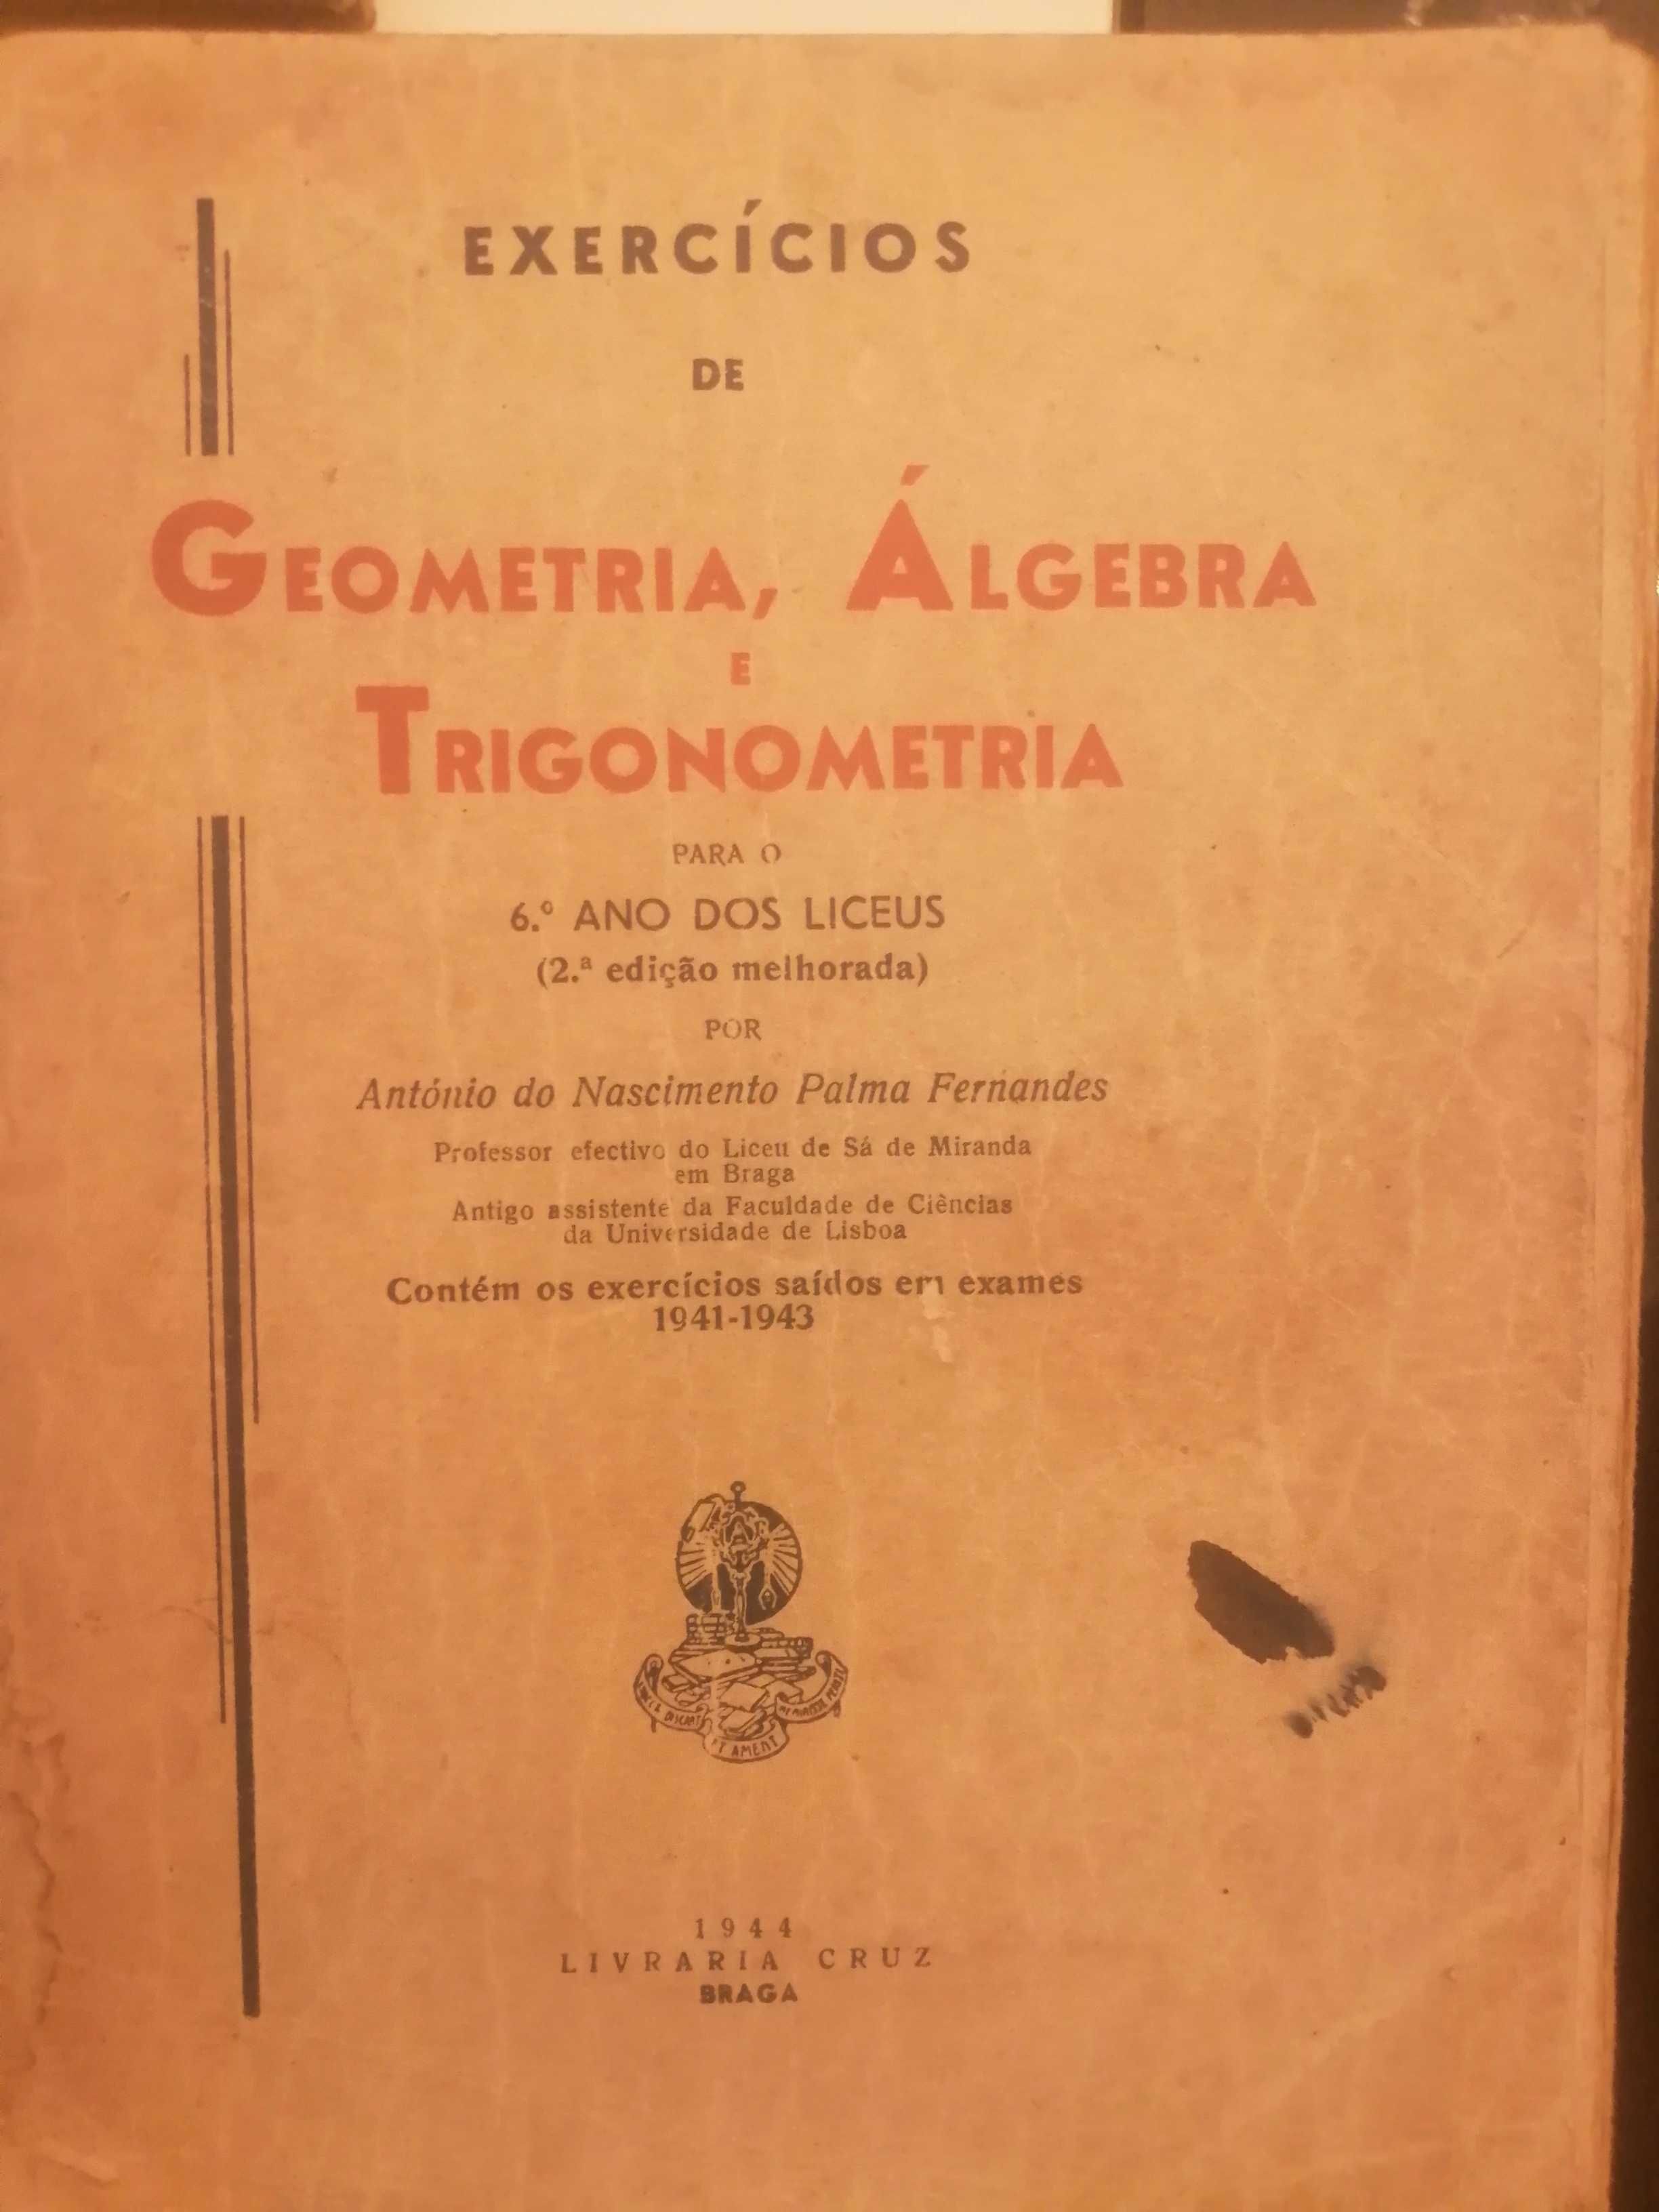 Livros elementos de álgebra liceus antigos